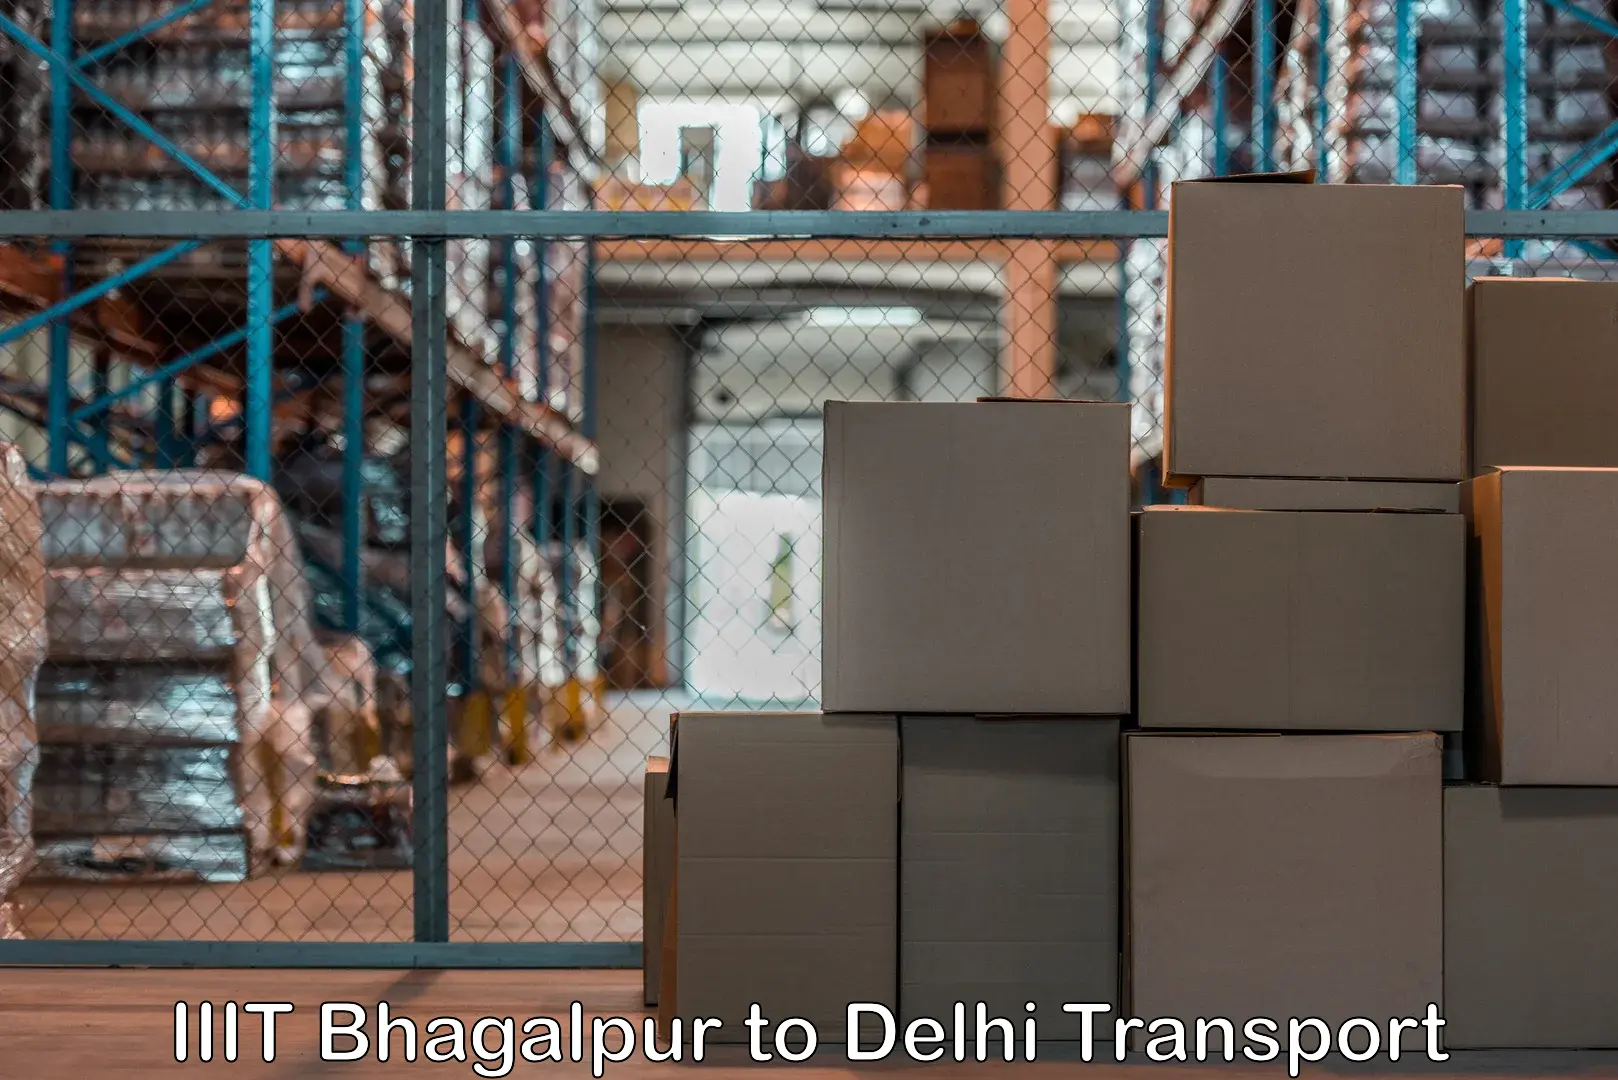 Air freight transport services IIIT Bhagalpur to Delhi